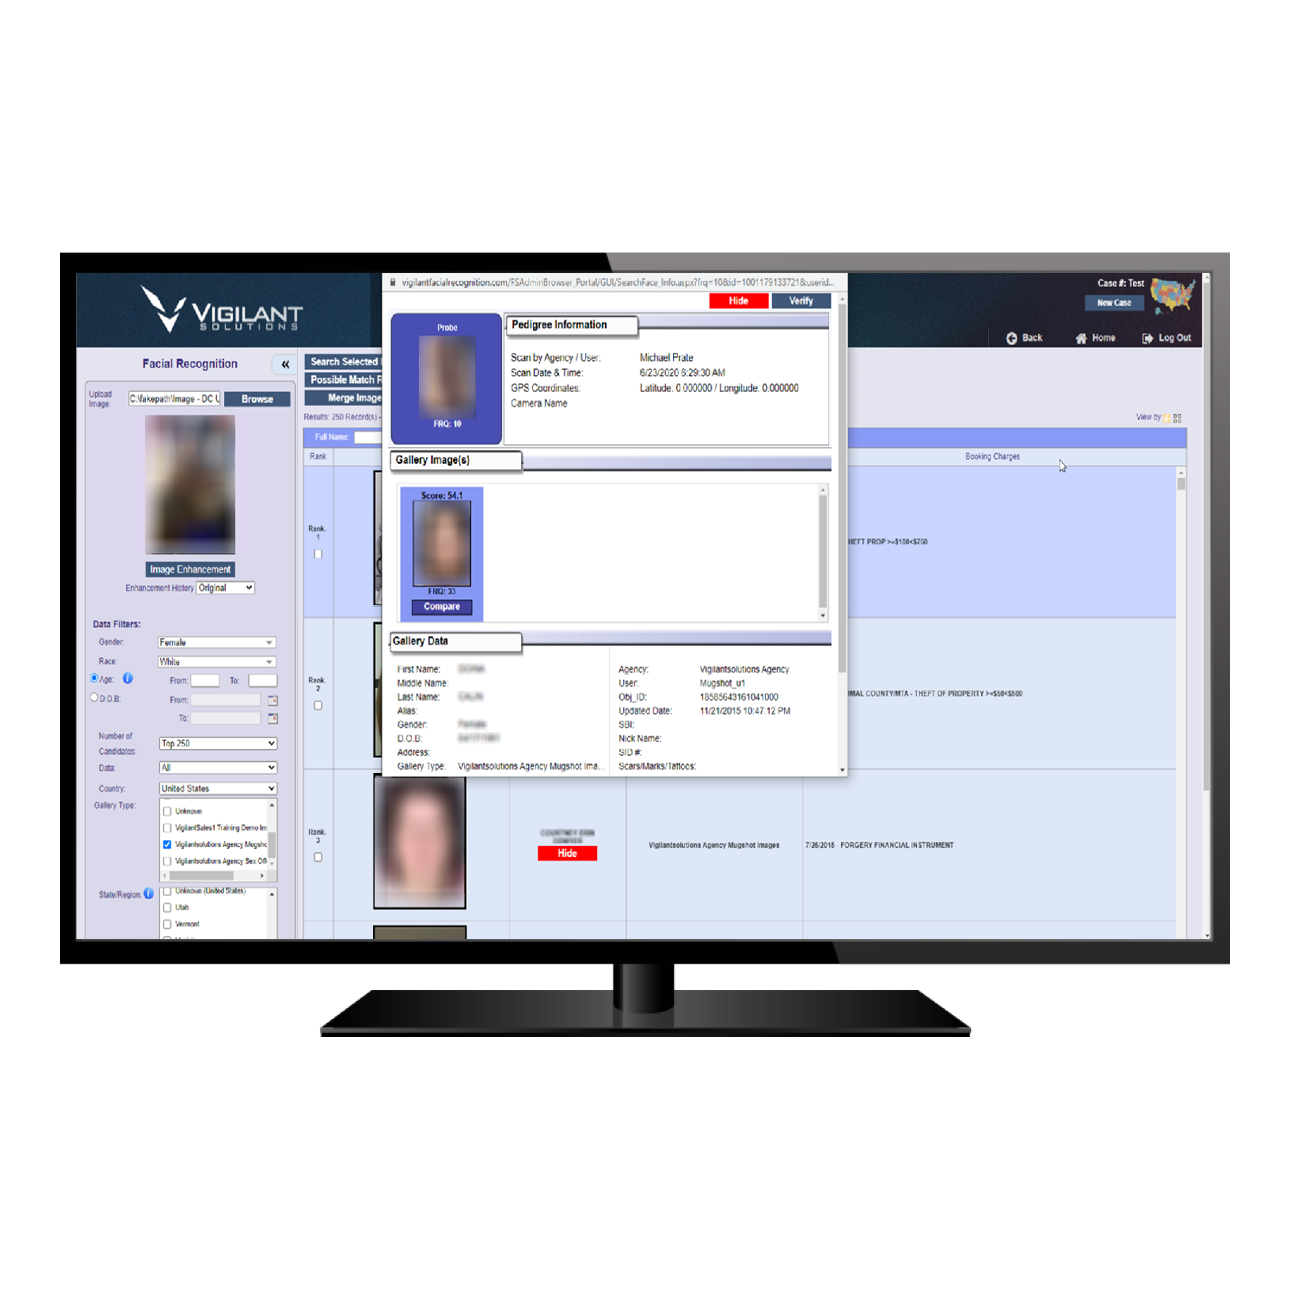 Vigilant FaceSearch image verification